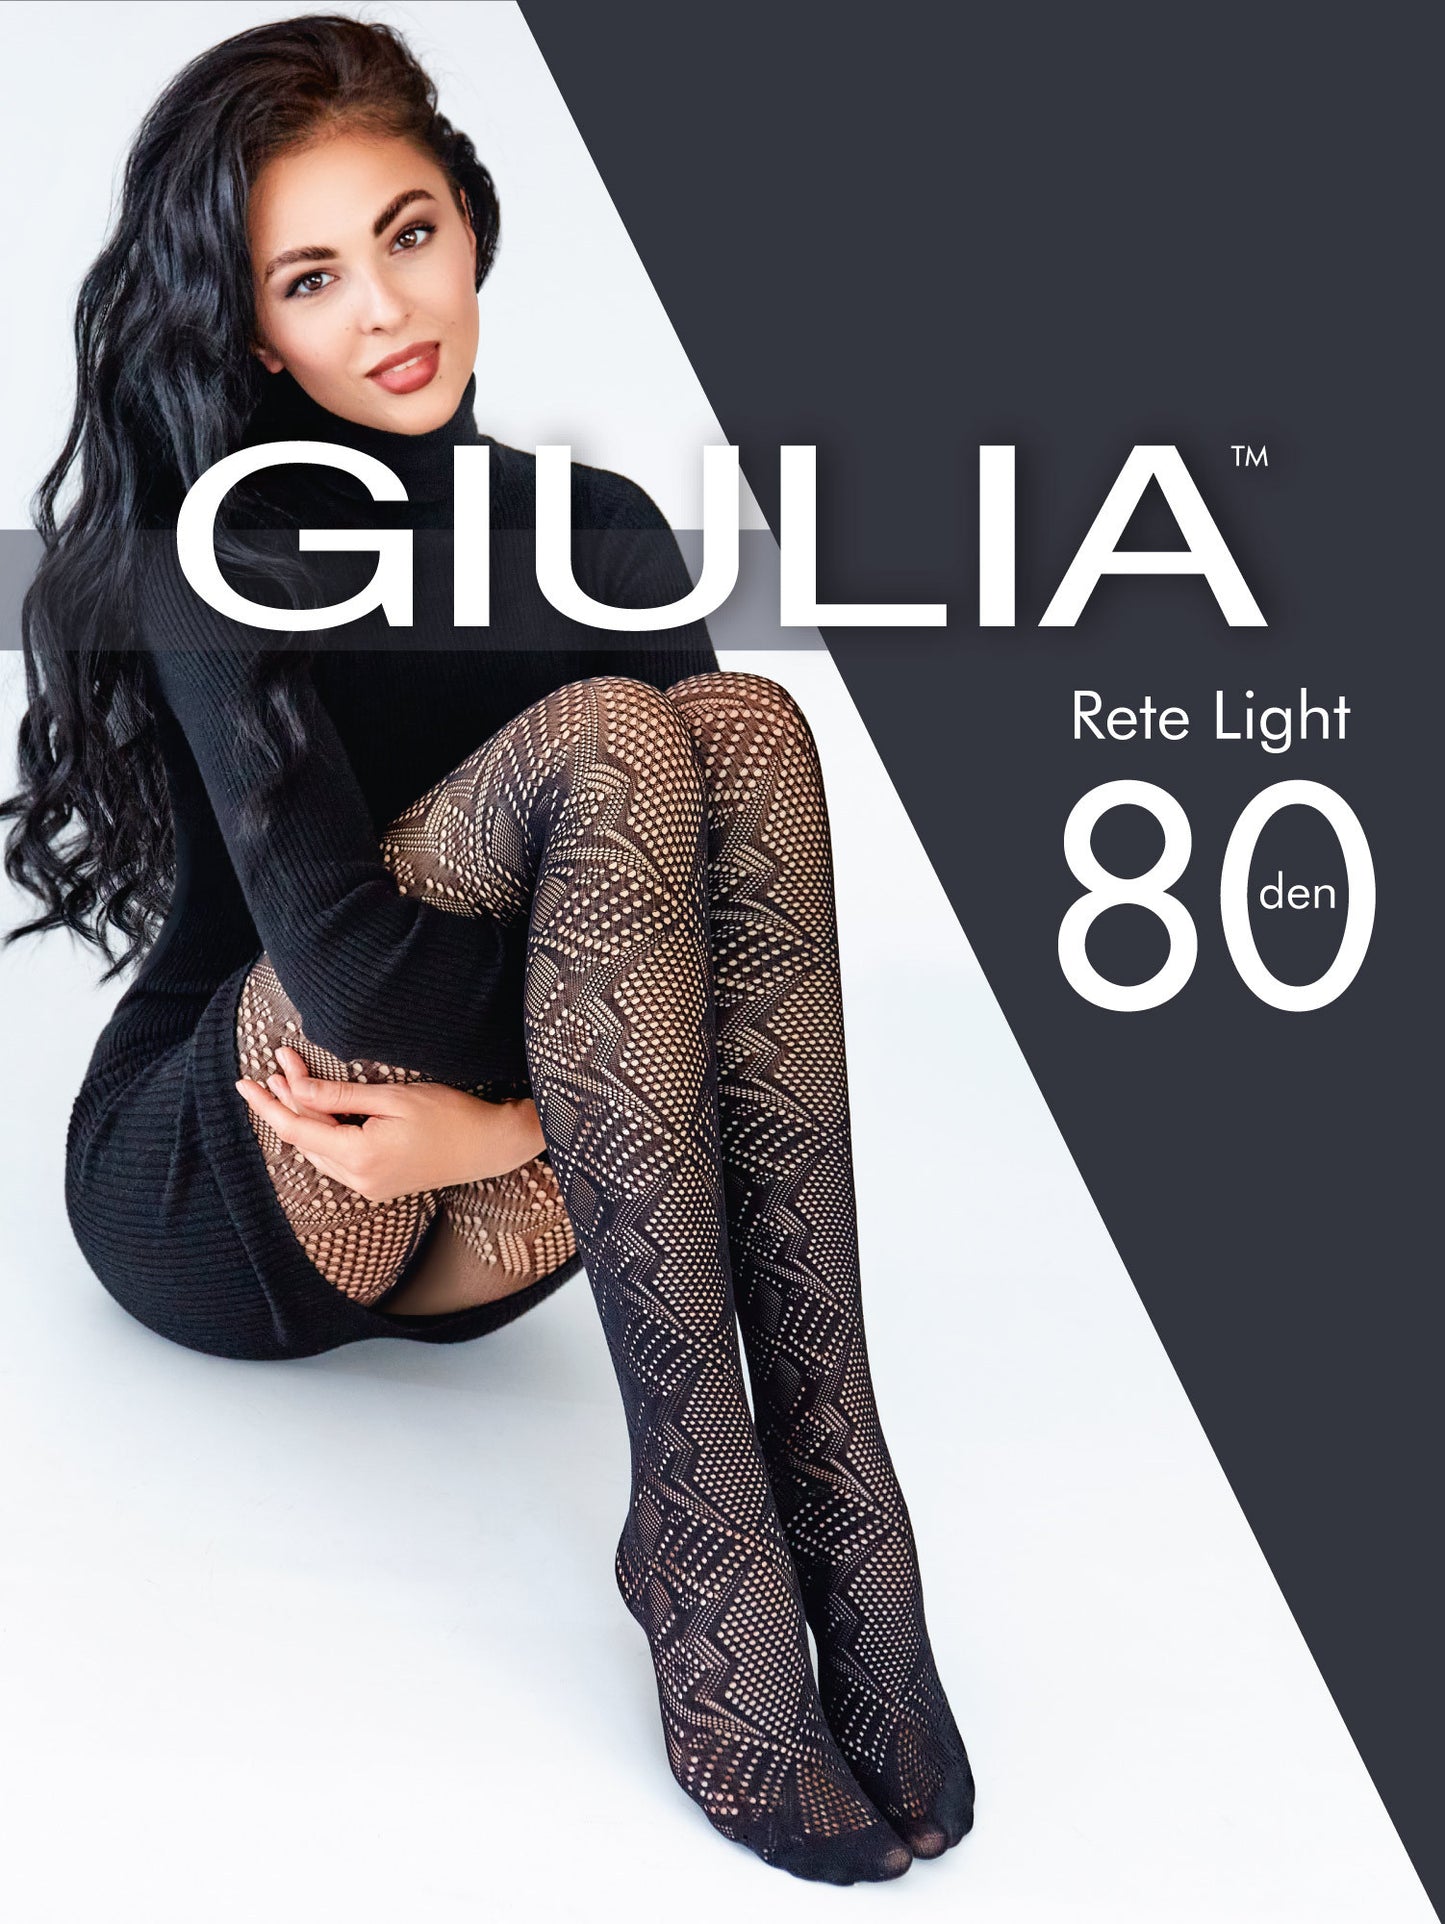 Giulia - Rete Light Tissue 80den Höschen mit geometrischem Muster